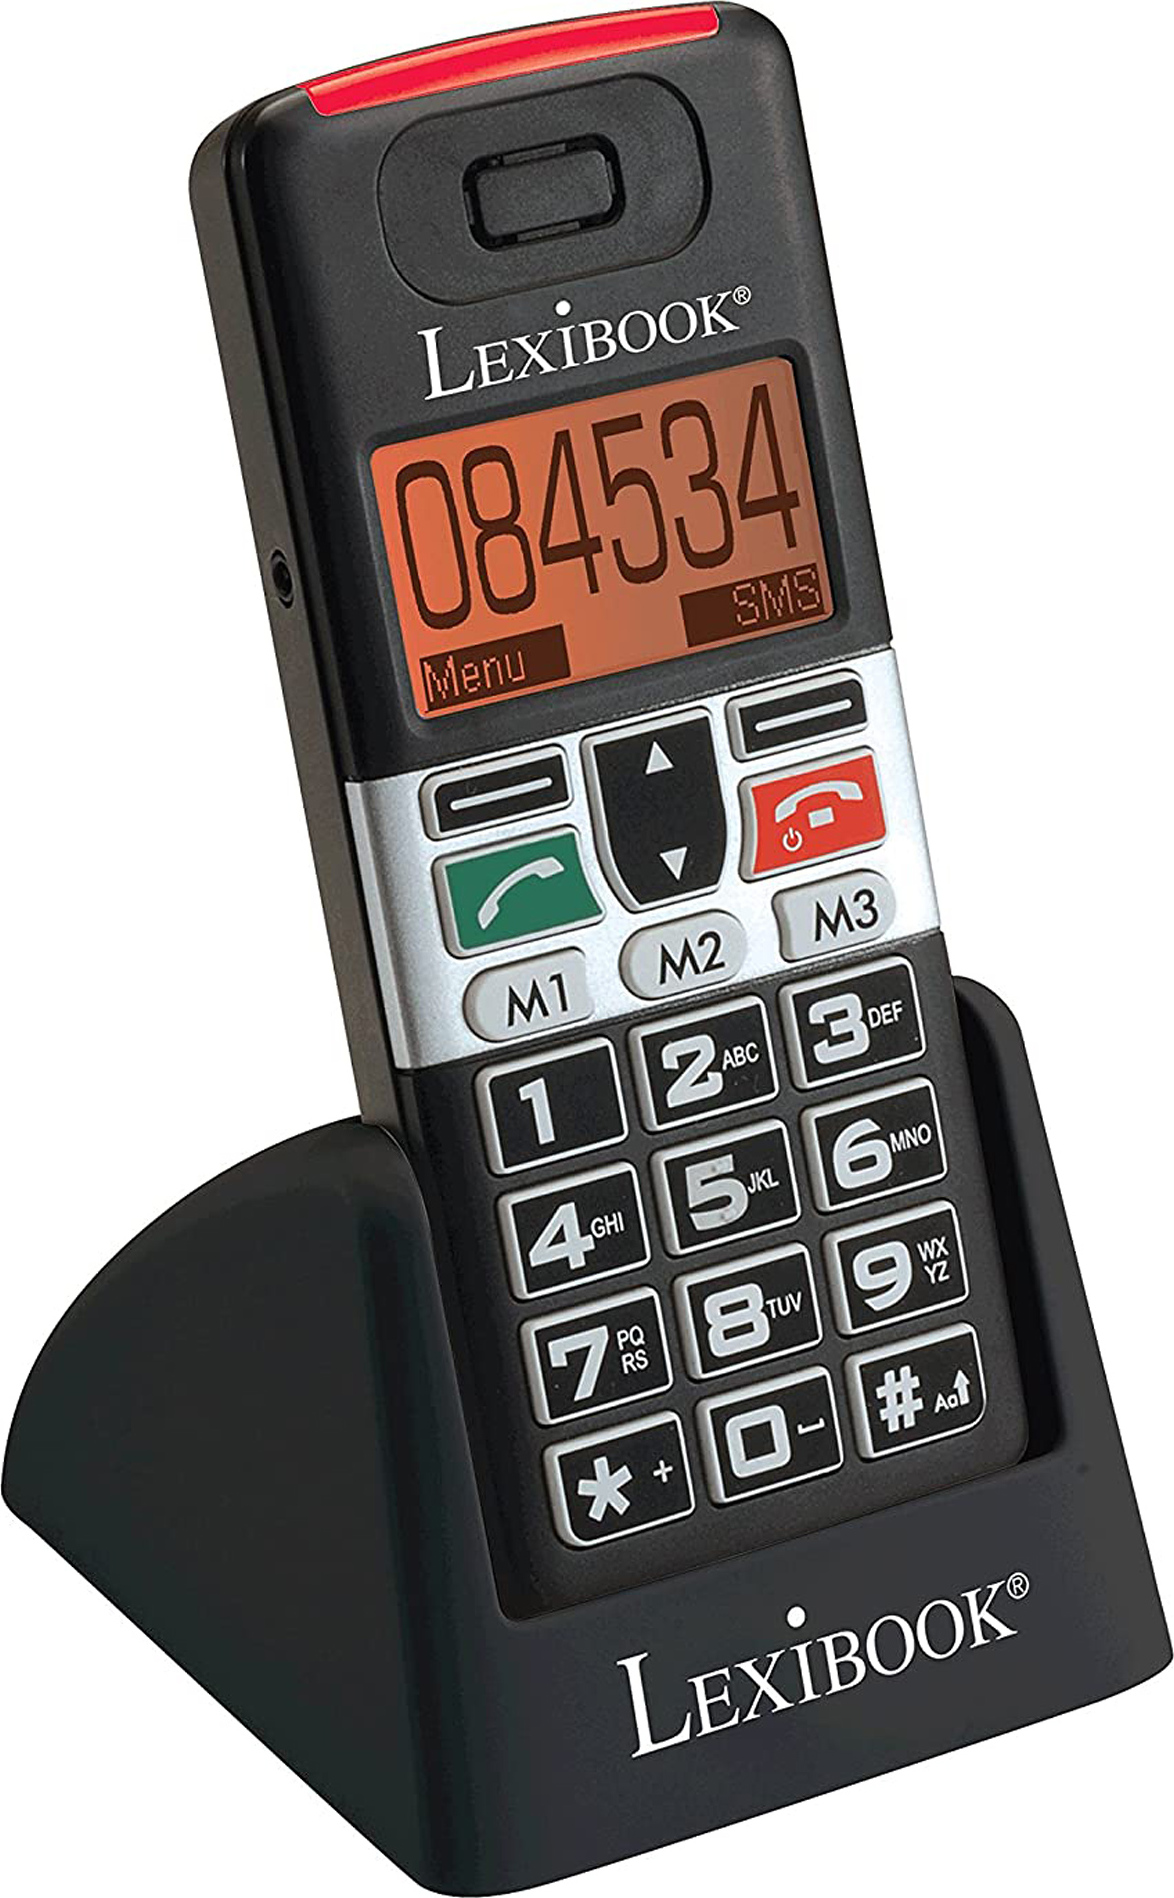 Mobilní telefon s velkými tlačítky pro seniory